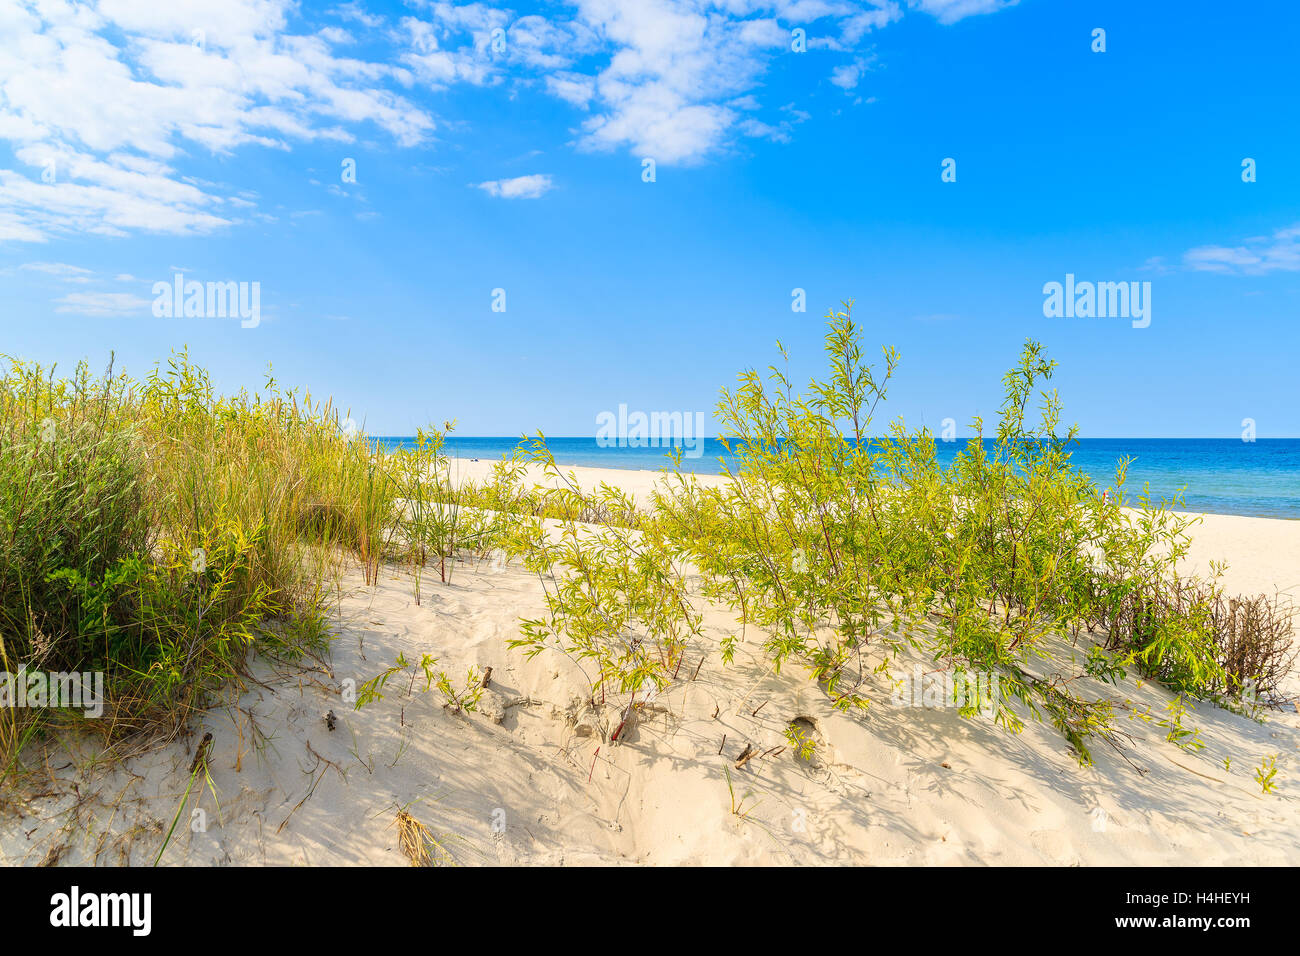 Erba verde su una duna di sabbia sulla spiaggia di Jurata villaggio costiero, Mar Baltico, Polonia Foto Stock